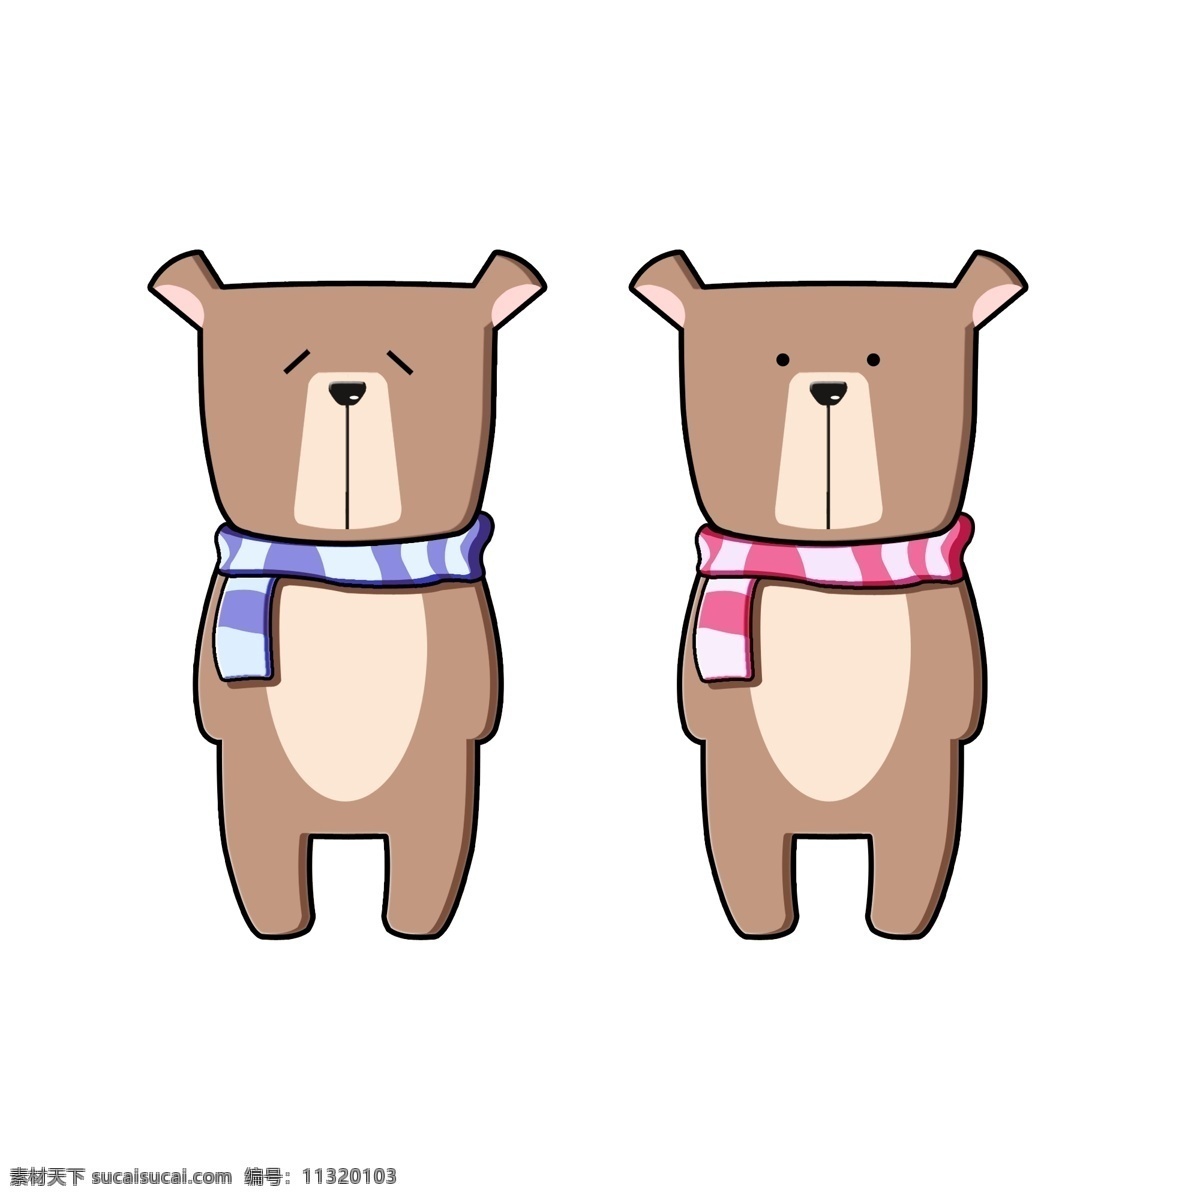 呆 萌 可爱 动画 小 熊 动物 卡通 元素 小熊 呆萌 卡通动物